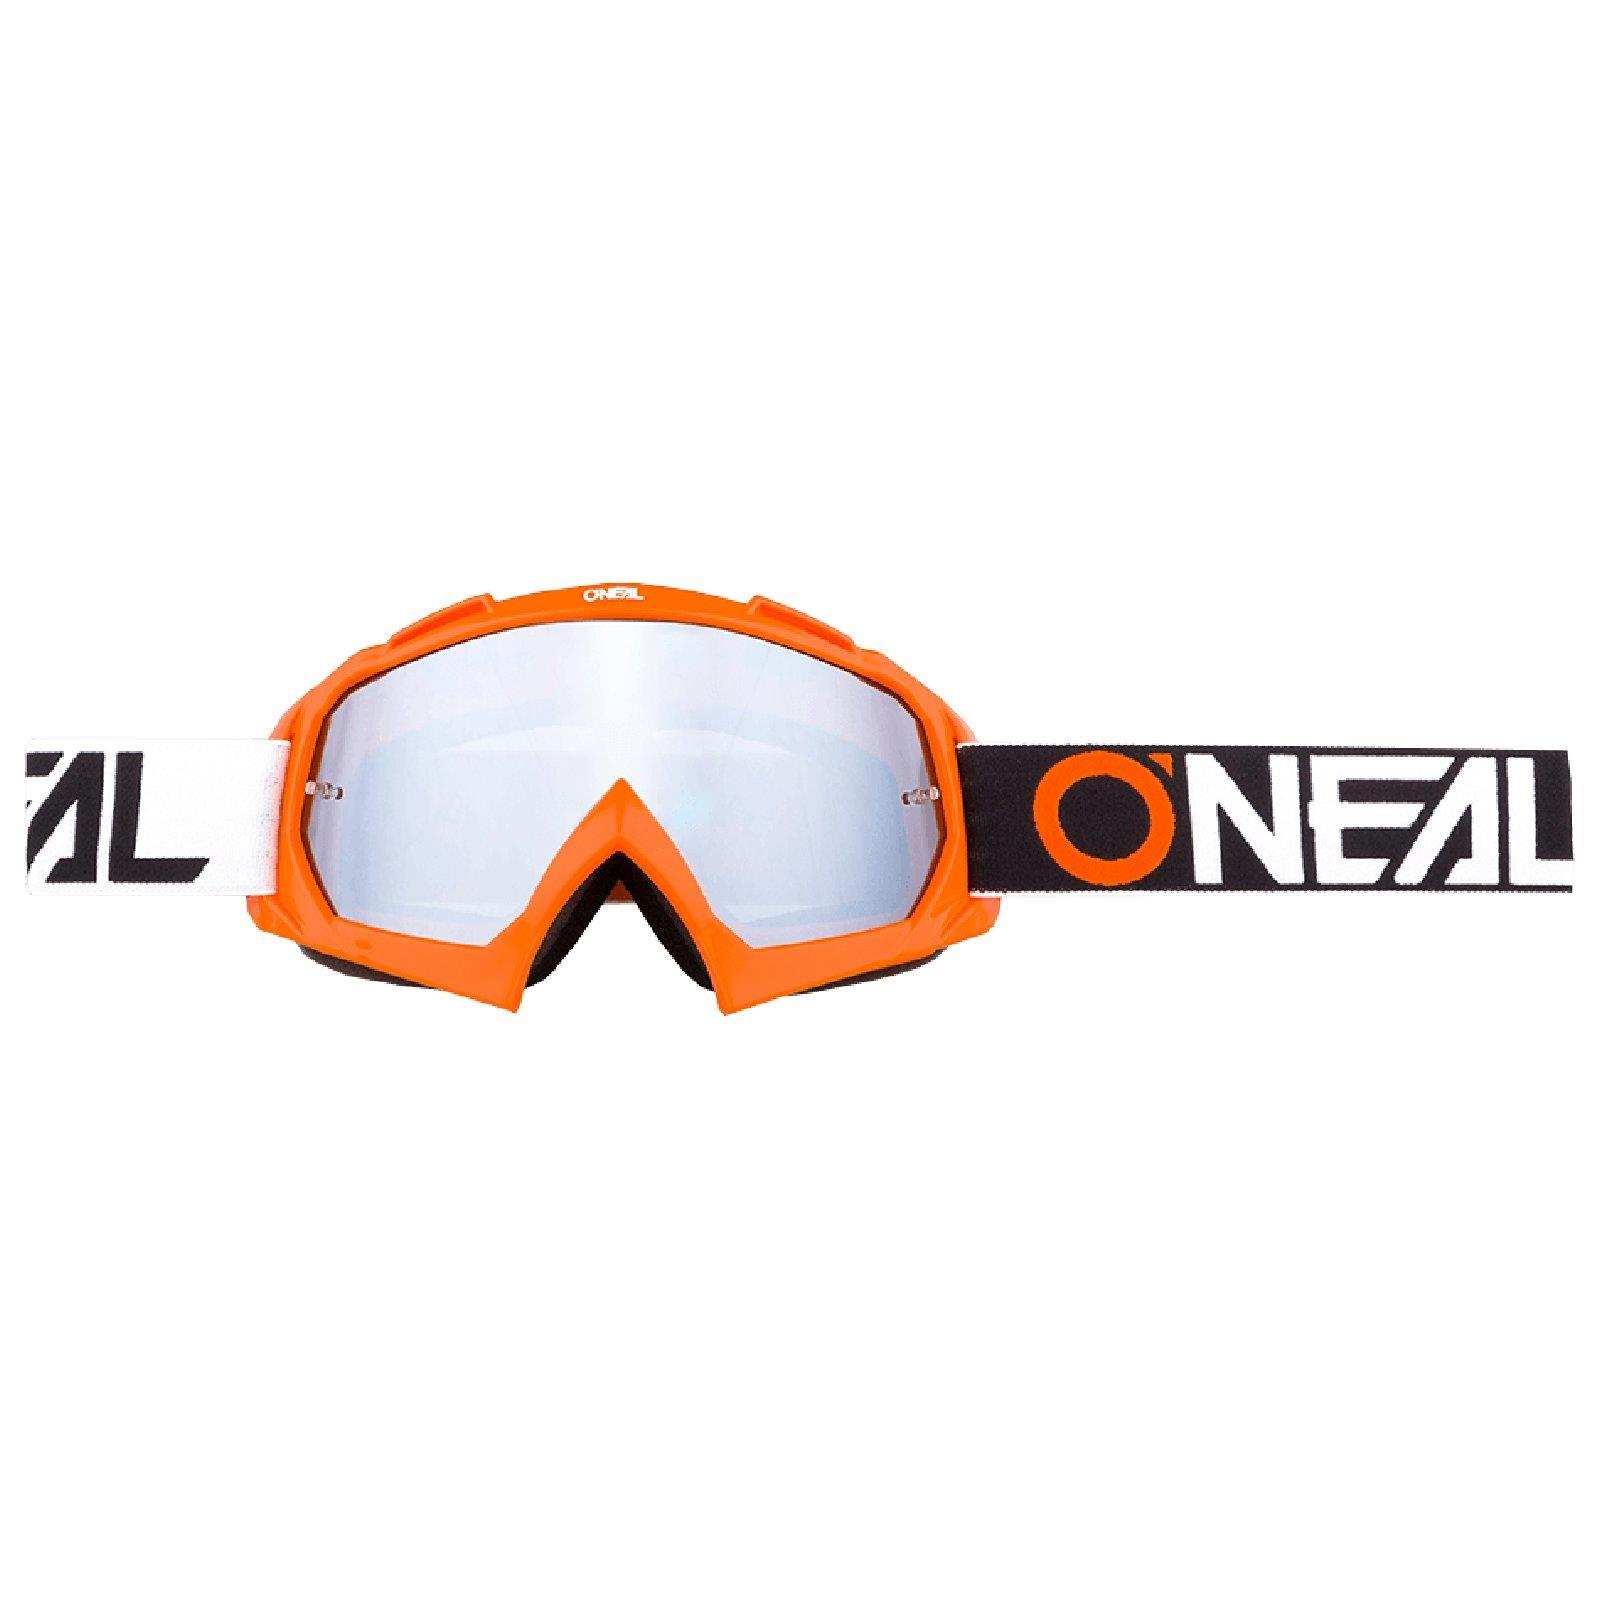 ONeal B-Zero Goggle Moto Cross Downhill Cross MX Brille DH Enduro Bzero Motorrad